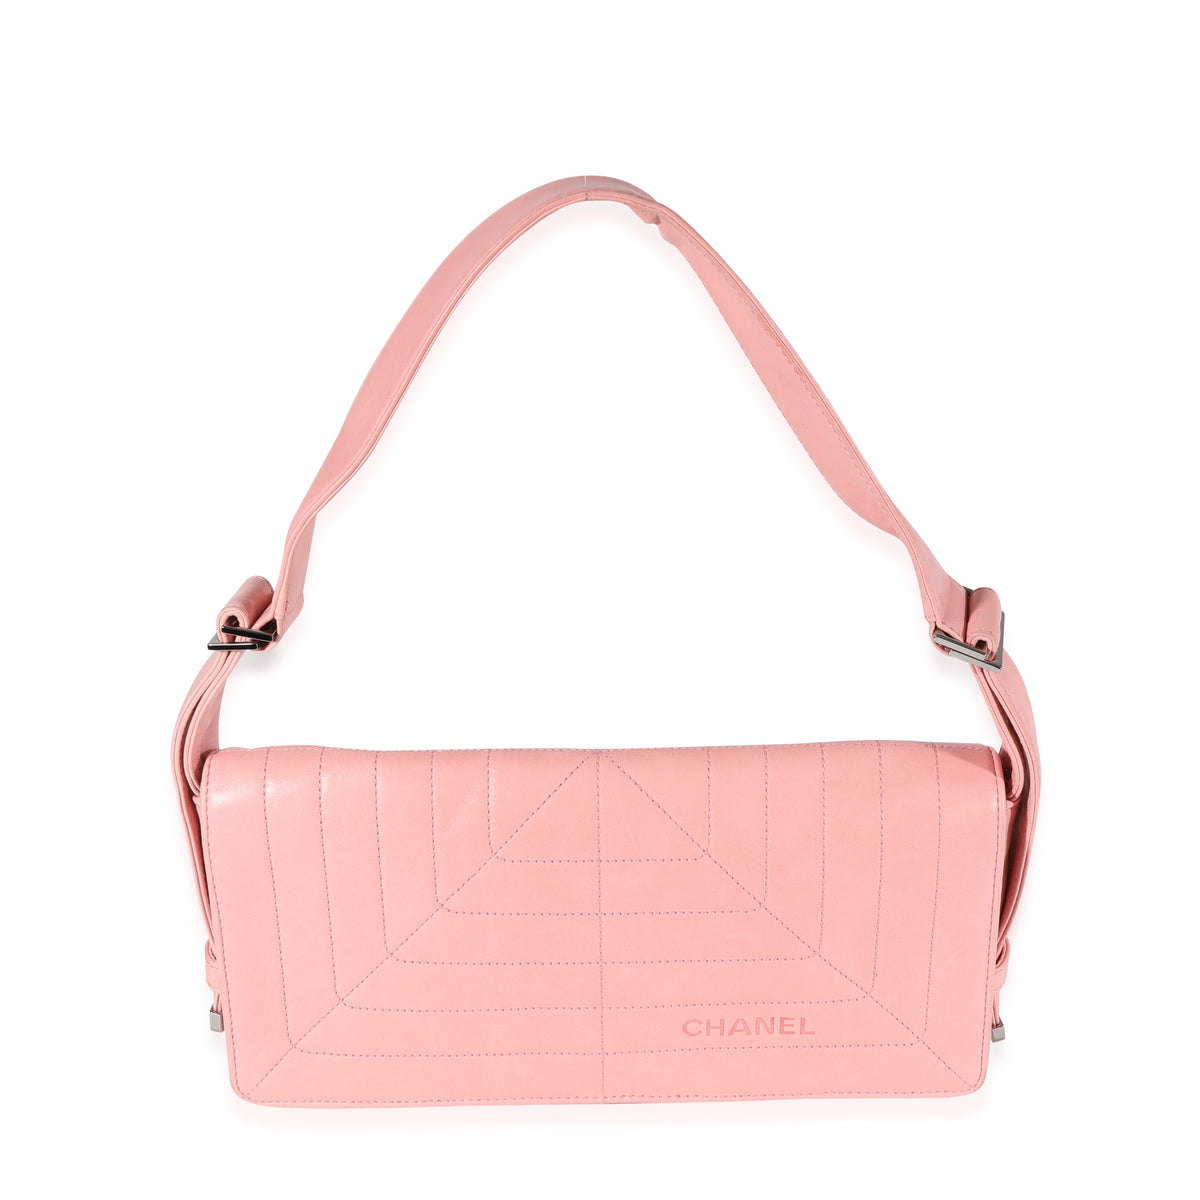 Chanel Pink Stitched Leather Flap Shoulder Bag, myGemma, SG